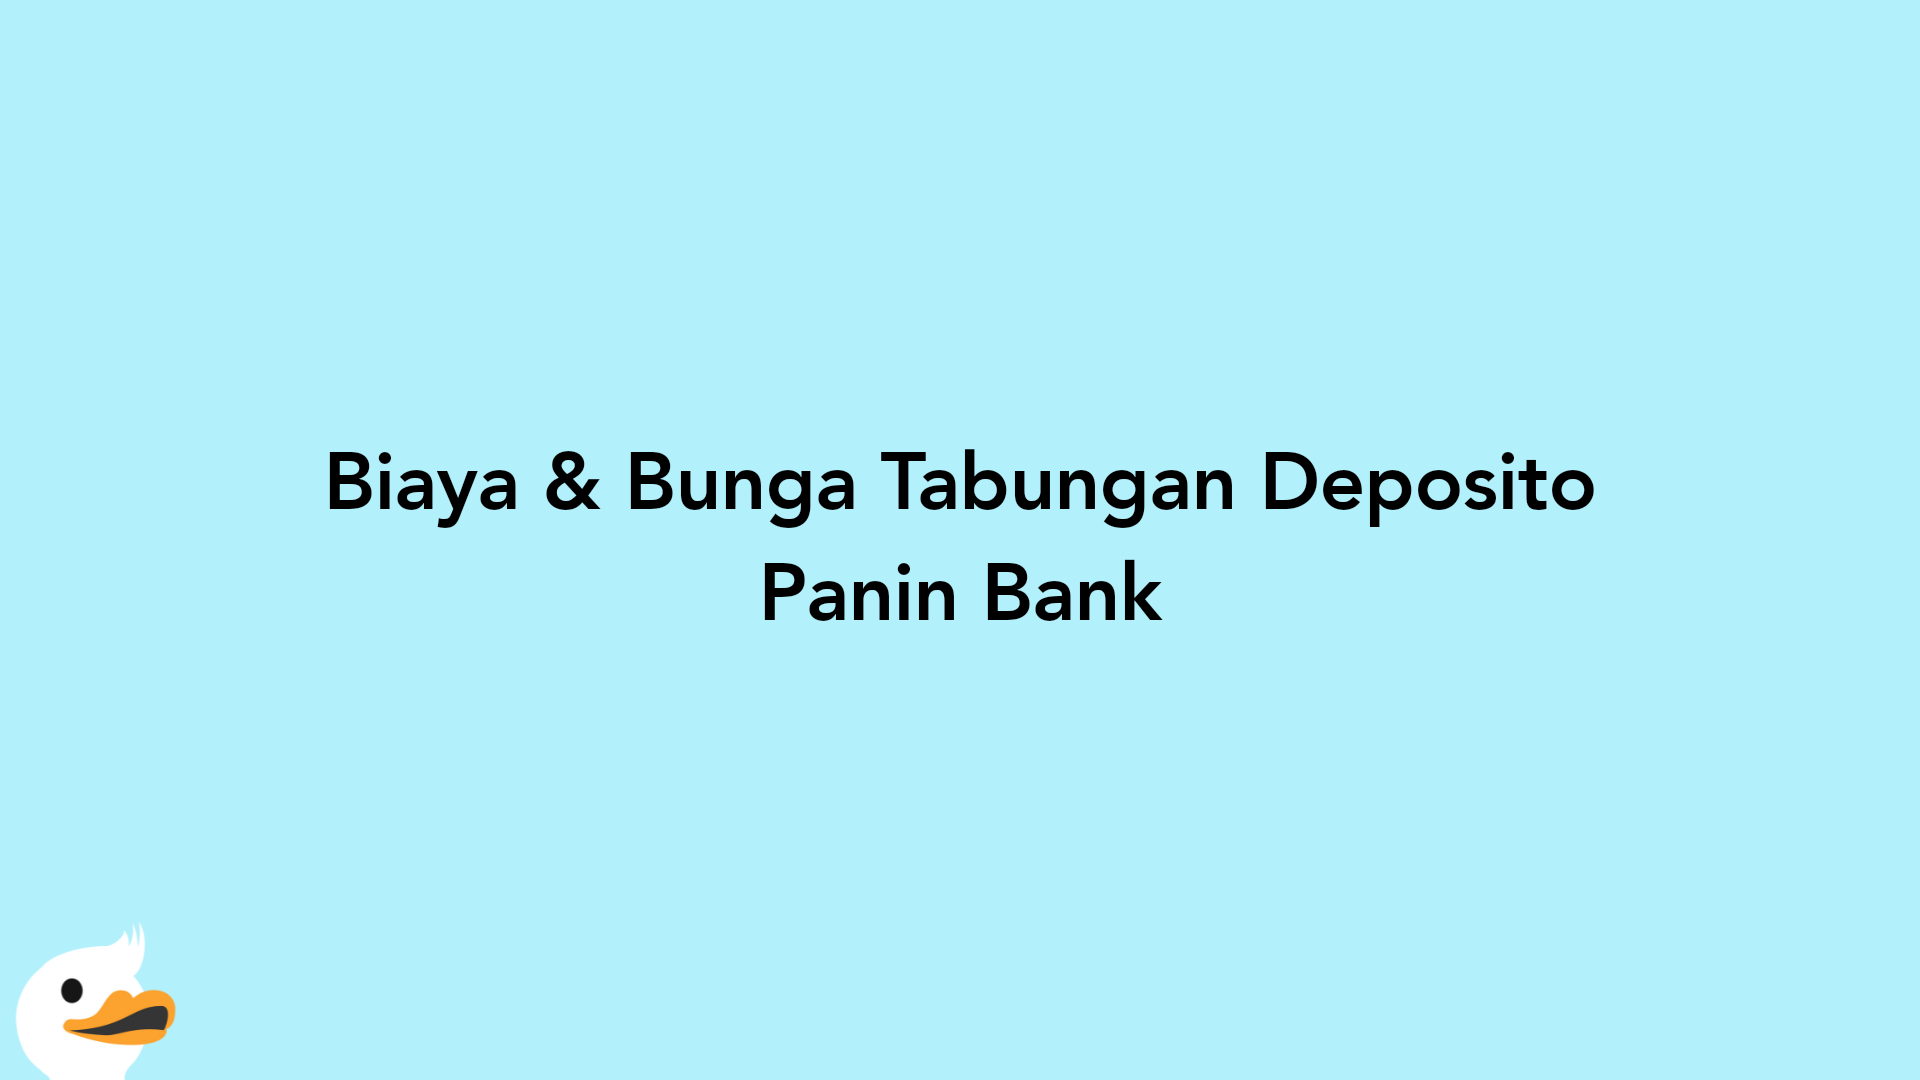 Biaya & Bunga Tabungan Deposito Panin Bank